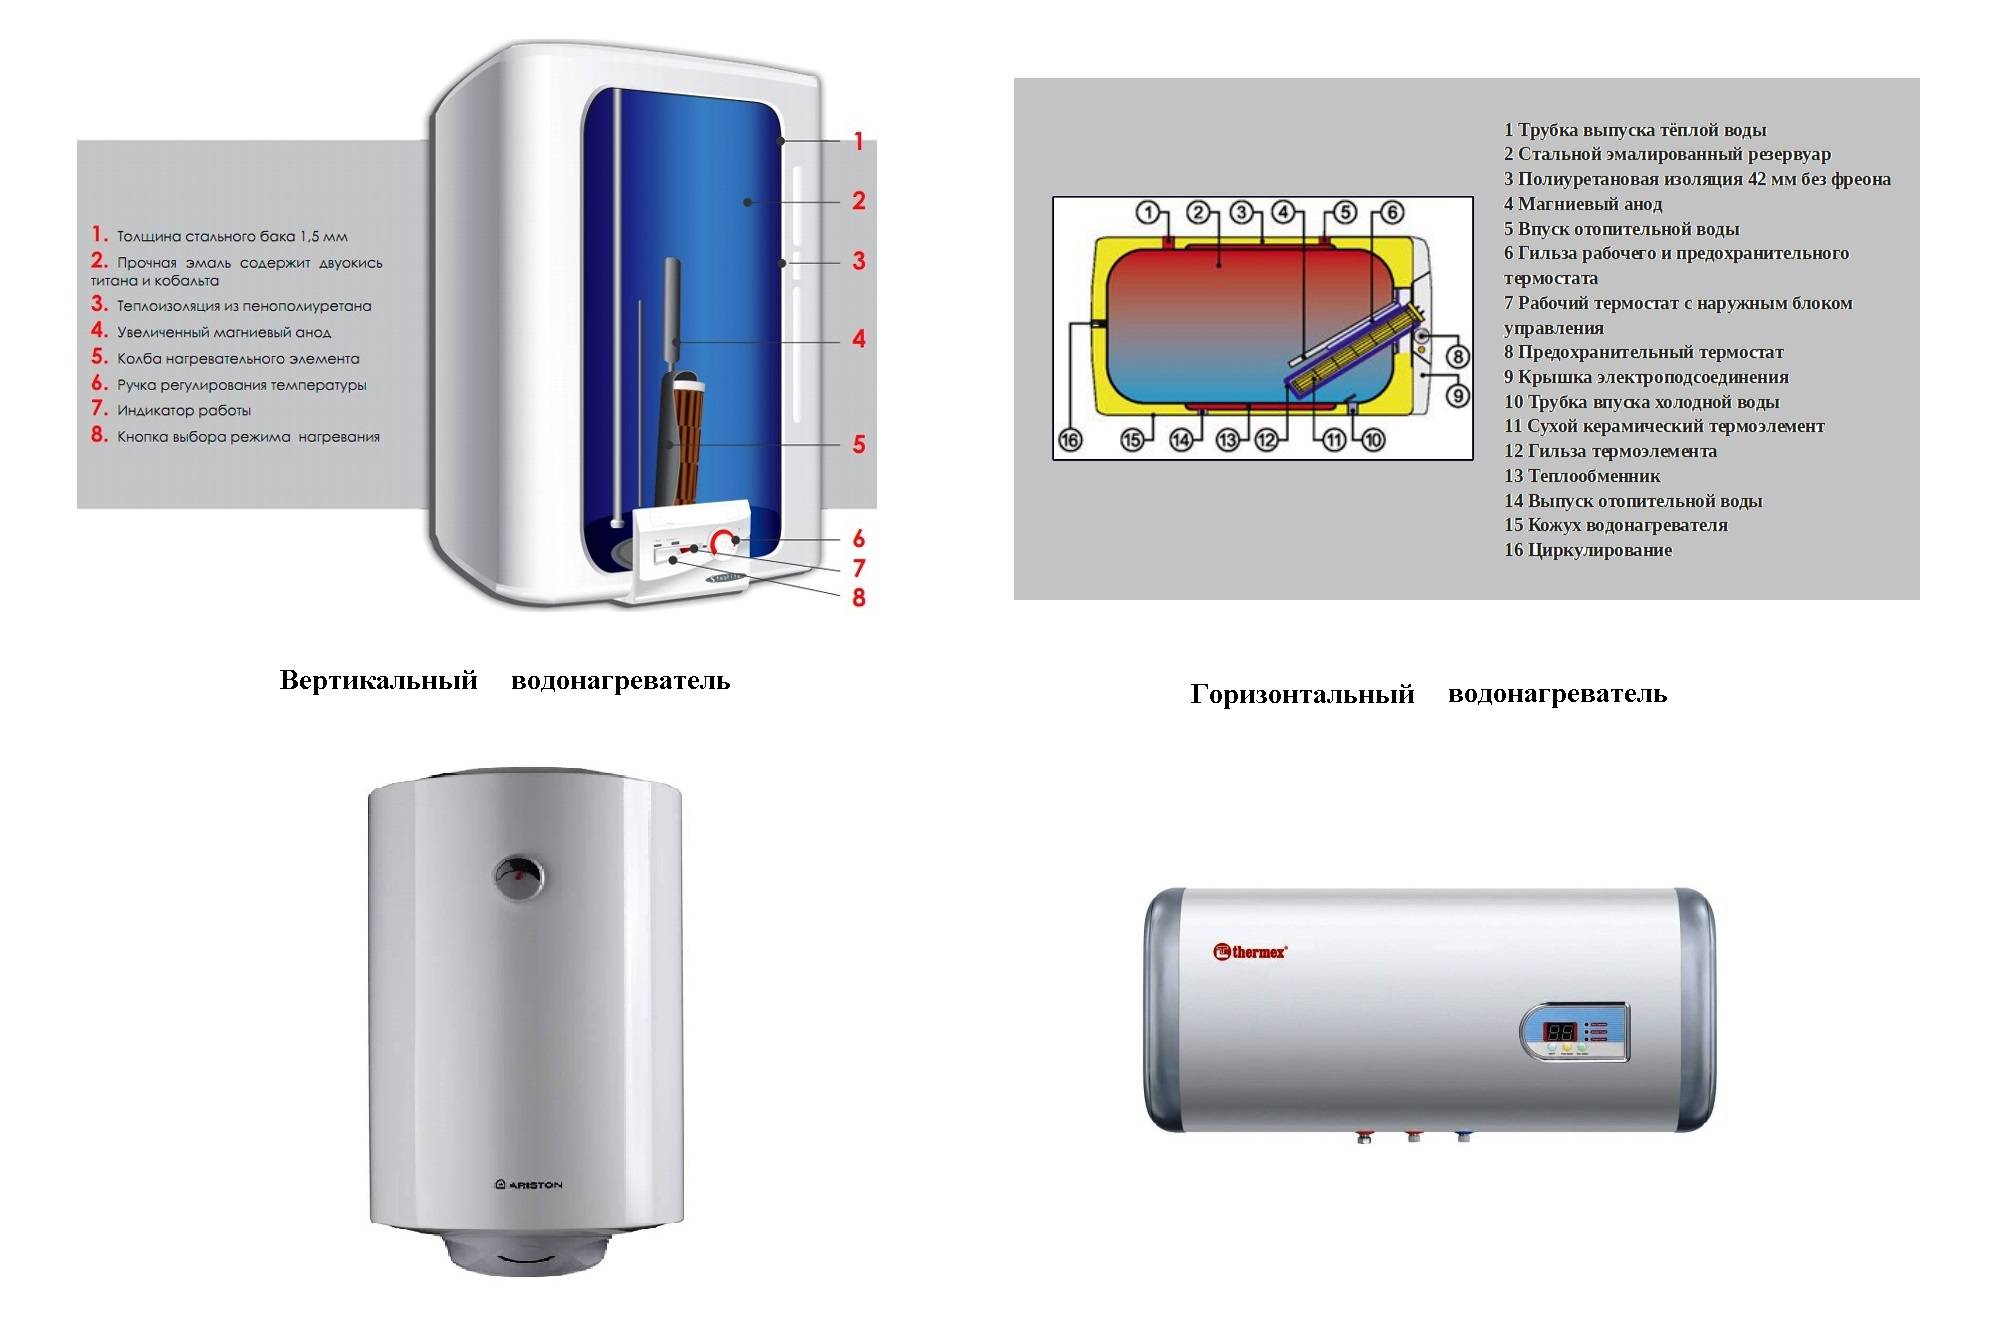 Виды, устройство, установка и впечатления о водонагревателях фирмы термекс